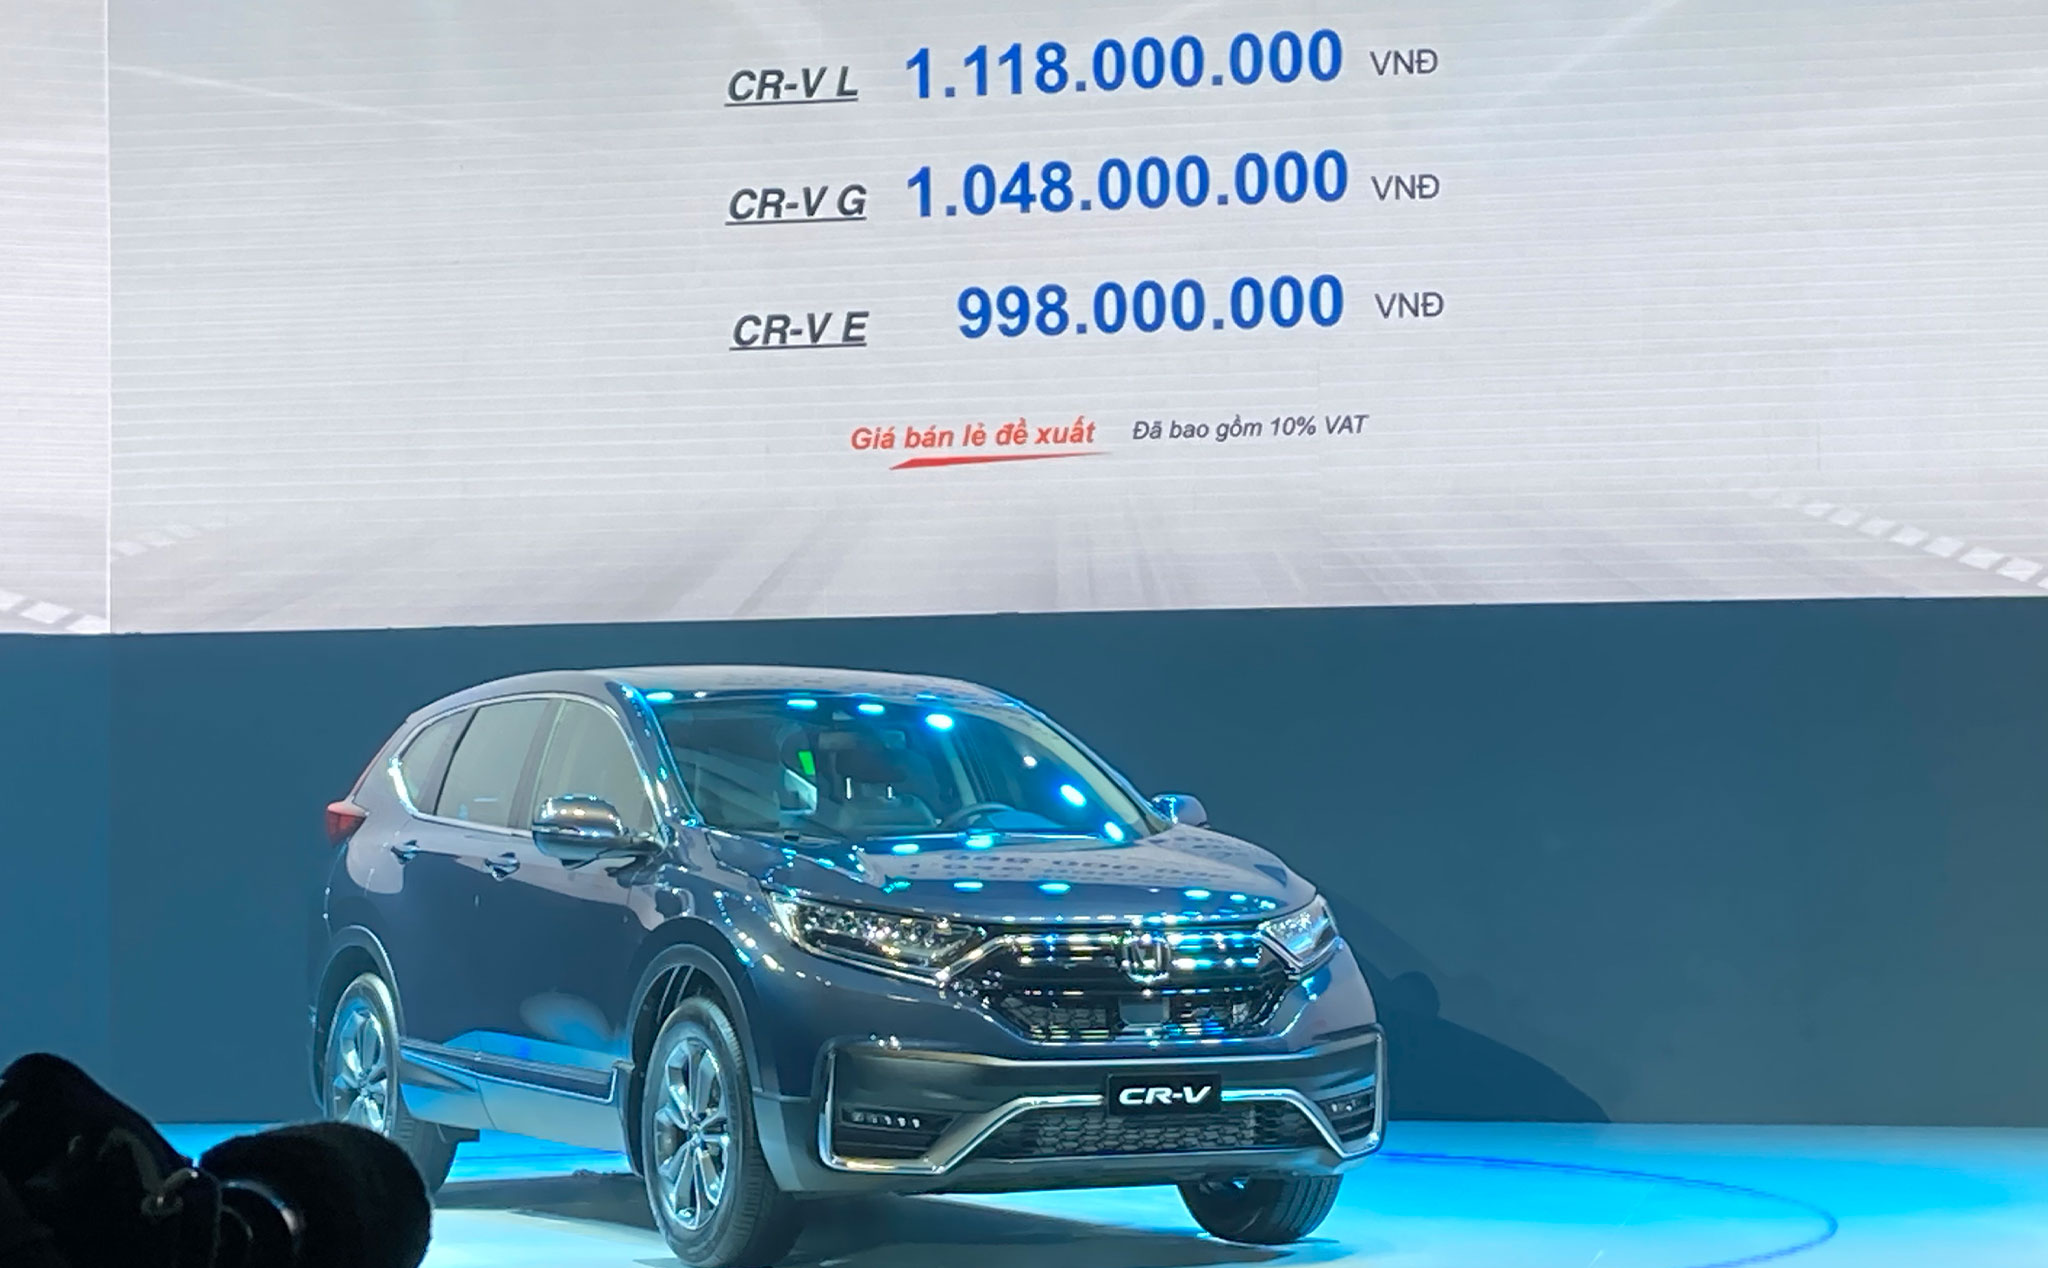 Honda CR-V 2020 ra mắt với 3 phiên bản, giá bán khởi điểm từ 998 triệu đồng